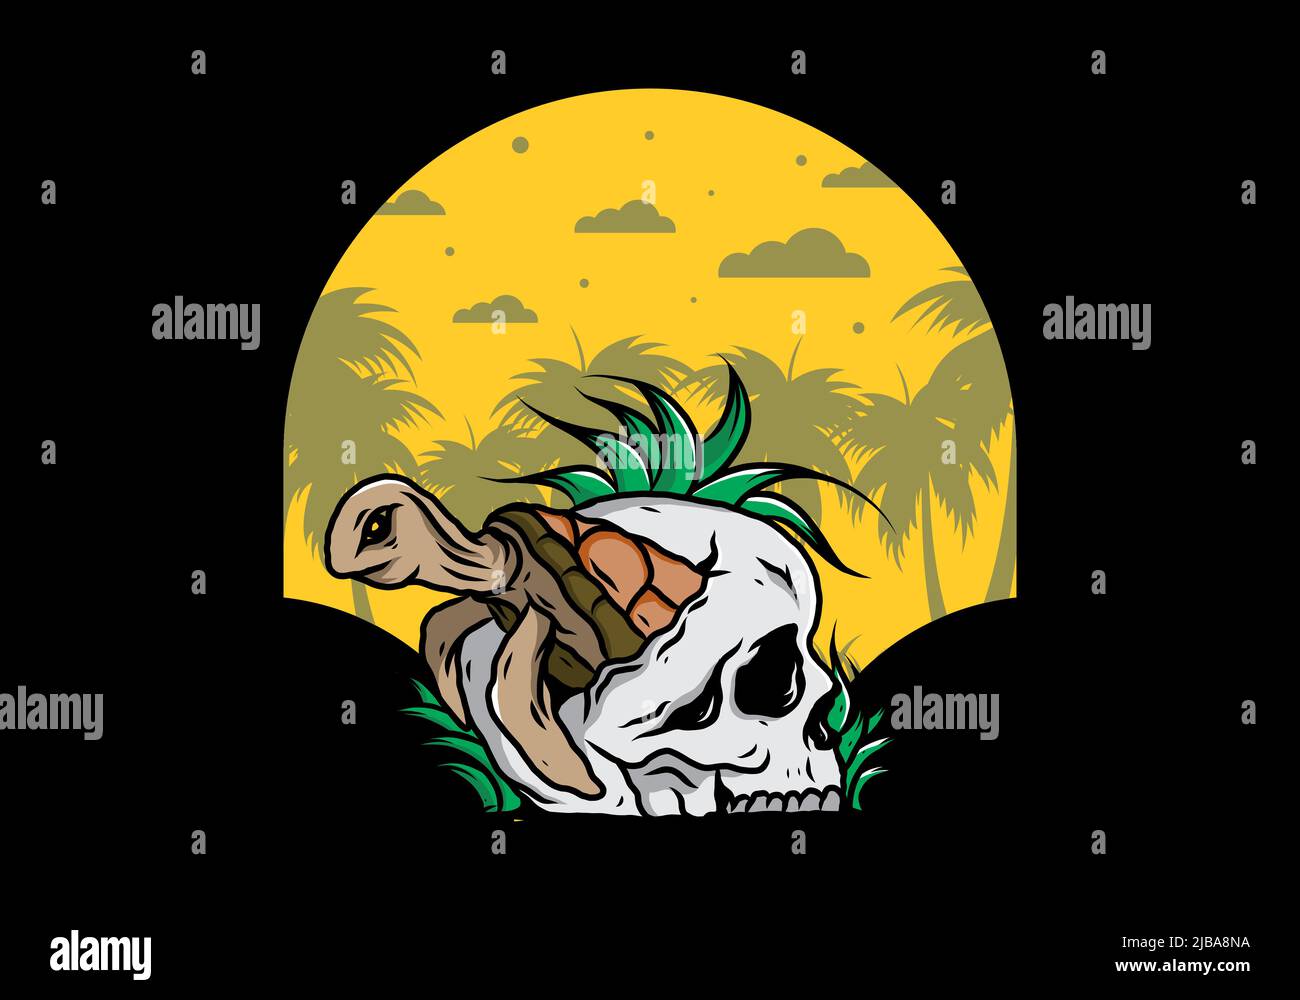 Tortuga marina en la ilustración del cráneo Ilustración del Vector